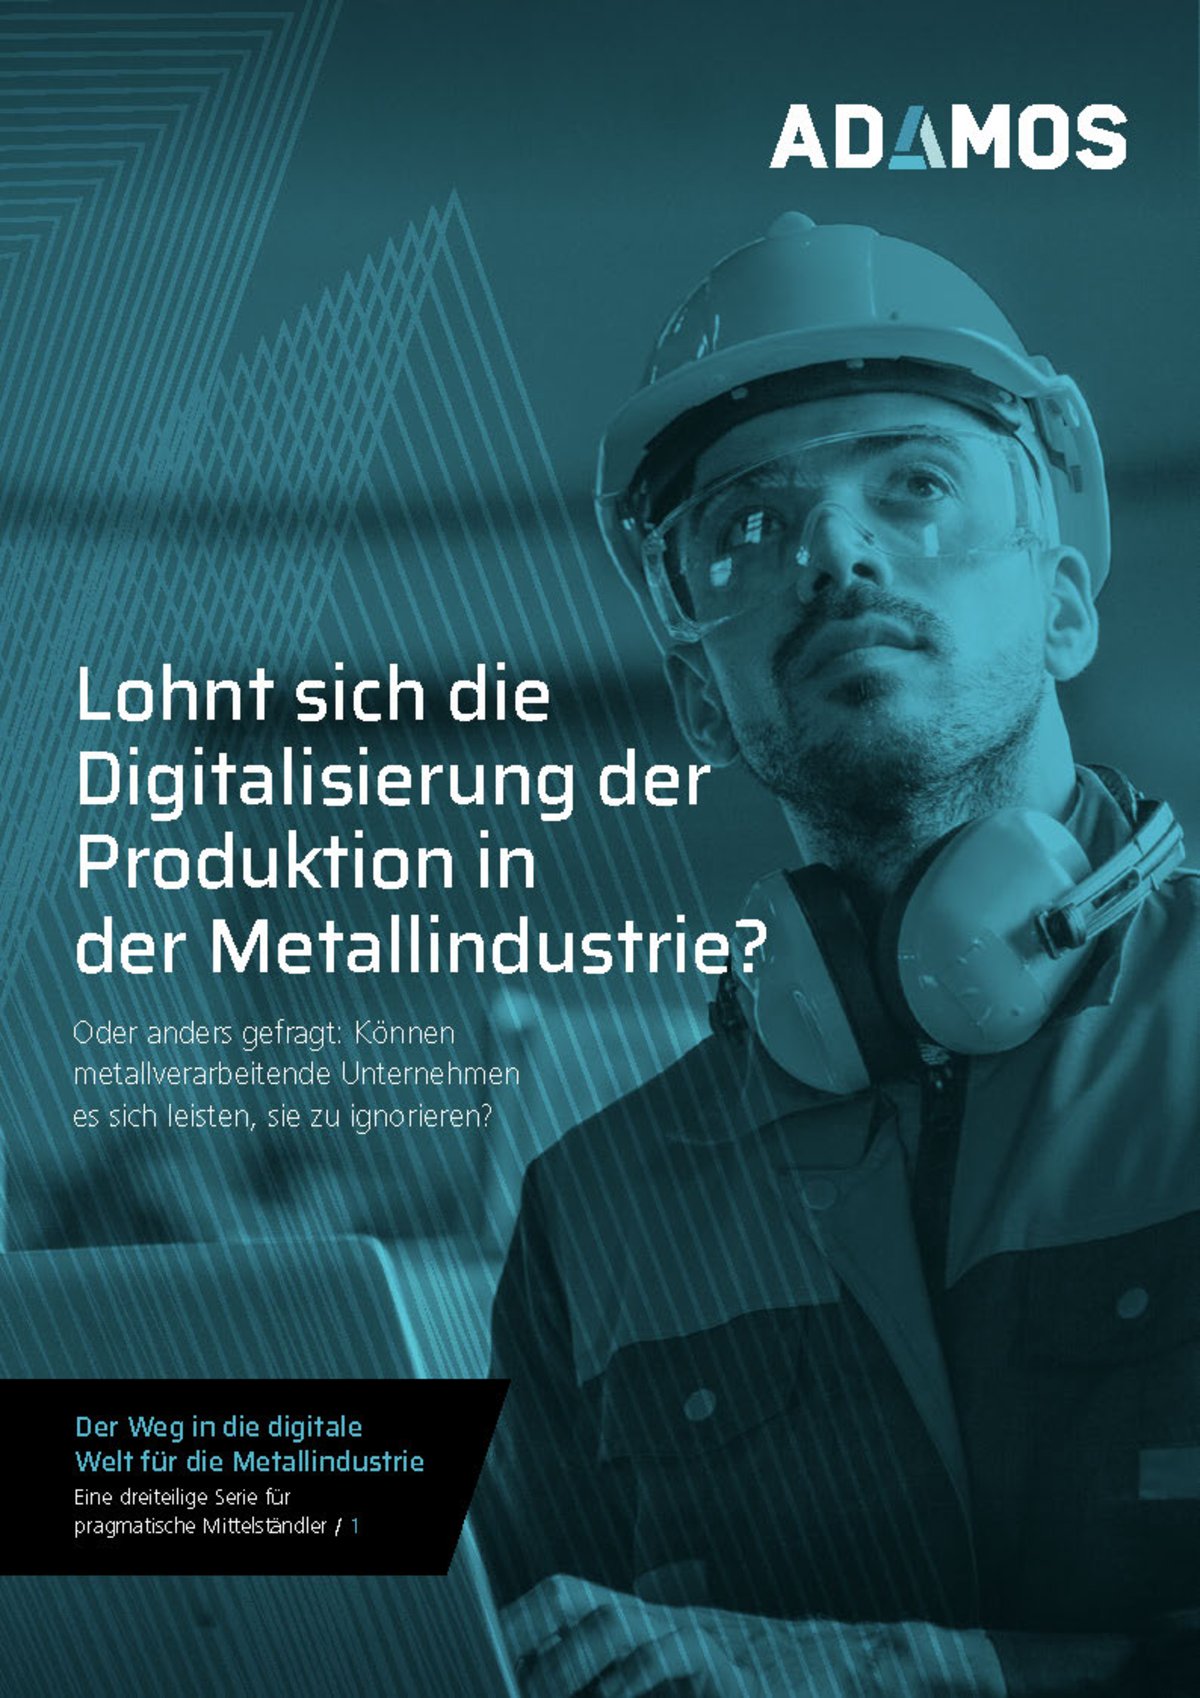 Digitalisierung in der Metall Industrie, Metallbearbeitung und Metallverarbeitung